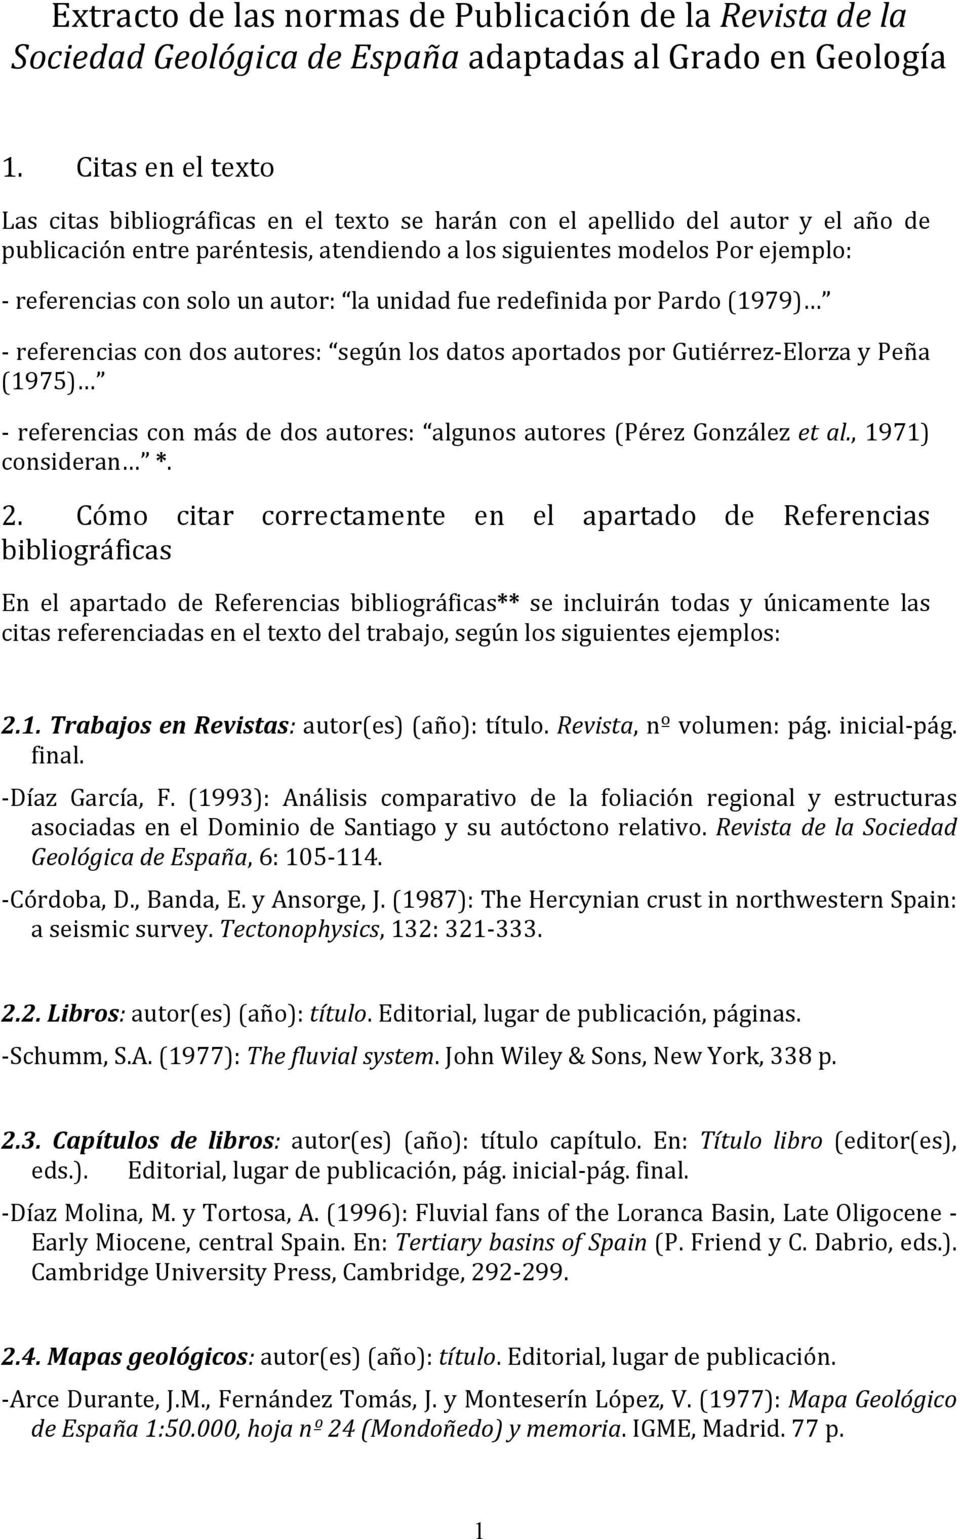 solo un autor: la unidad fue redefinida por Pardo (1979) - referencias con dos autores: según los datos aportados por Gutiérrez- Elorza y Peña (1975) - referencias con más de dos autores: algunos